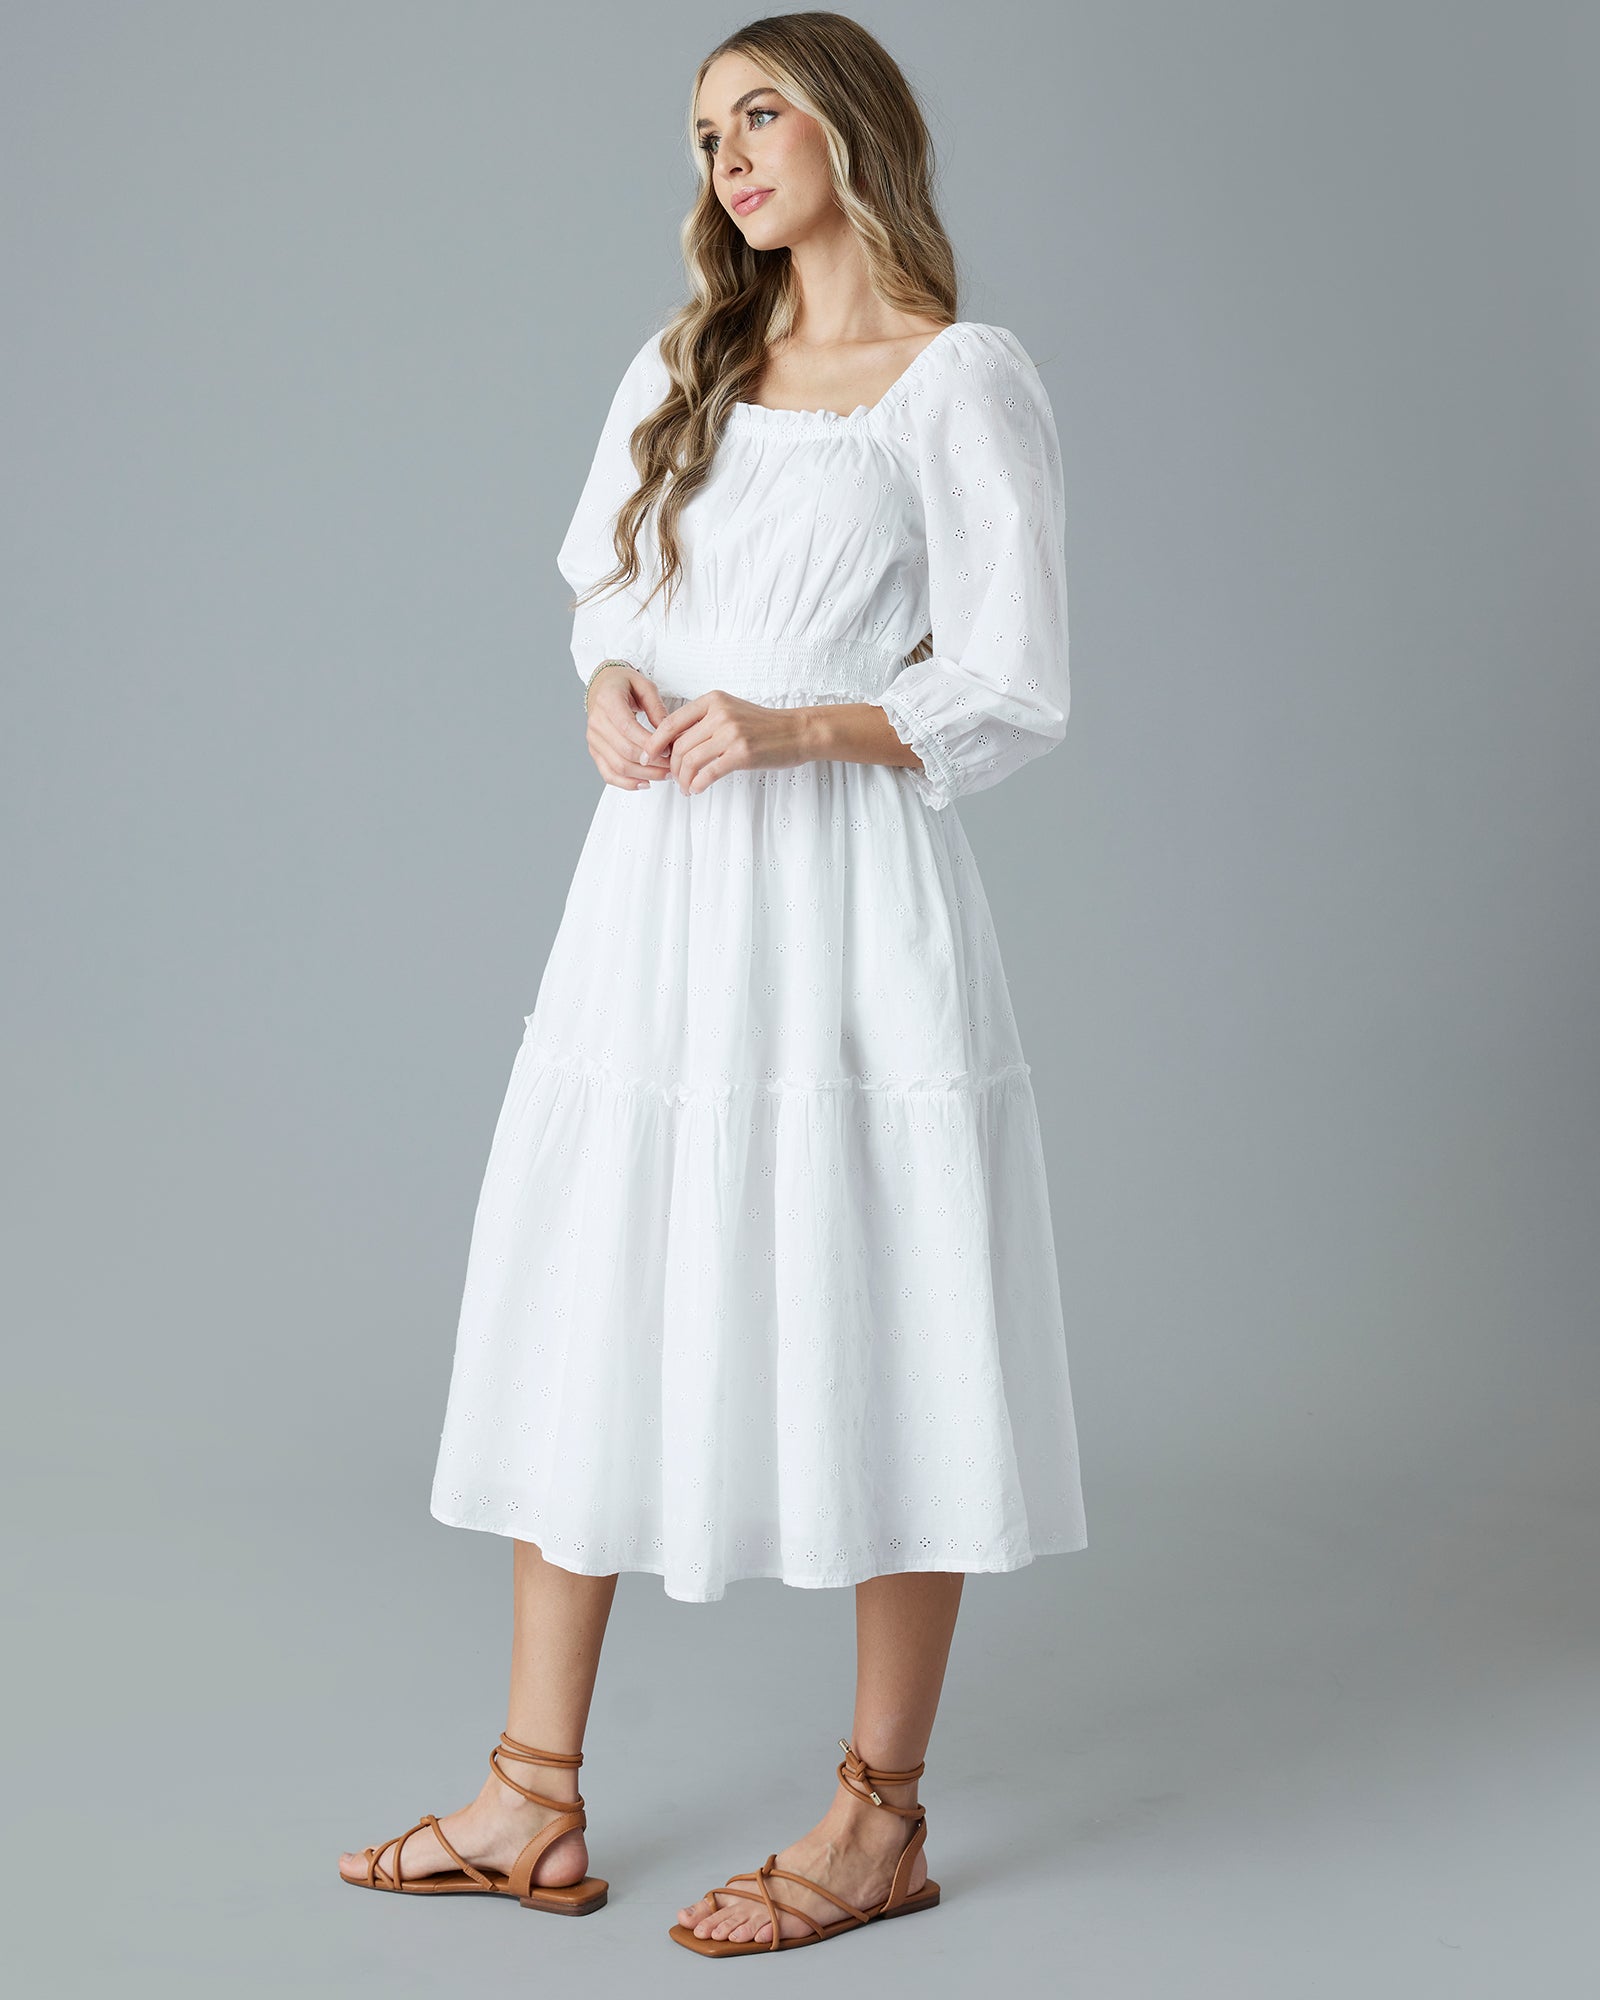 Woman in a white, eyelet midi length dress